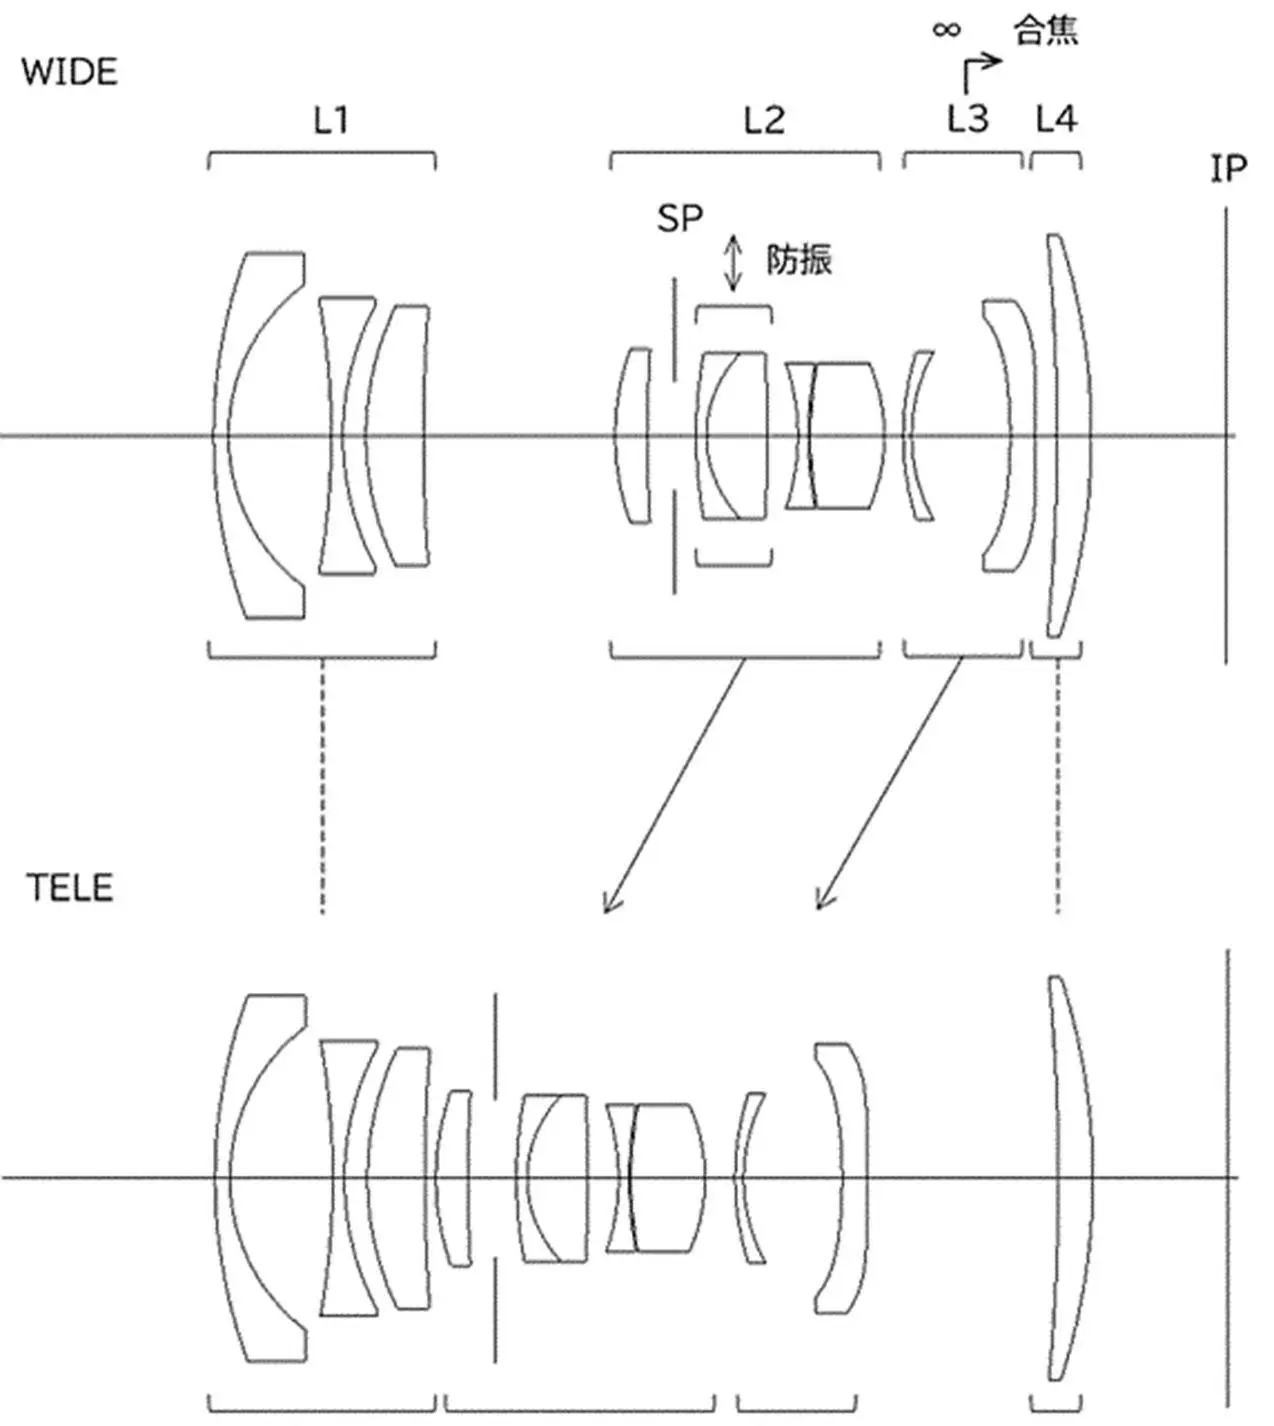 RF20 40mm F4 IS patent.jpg